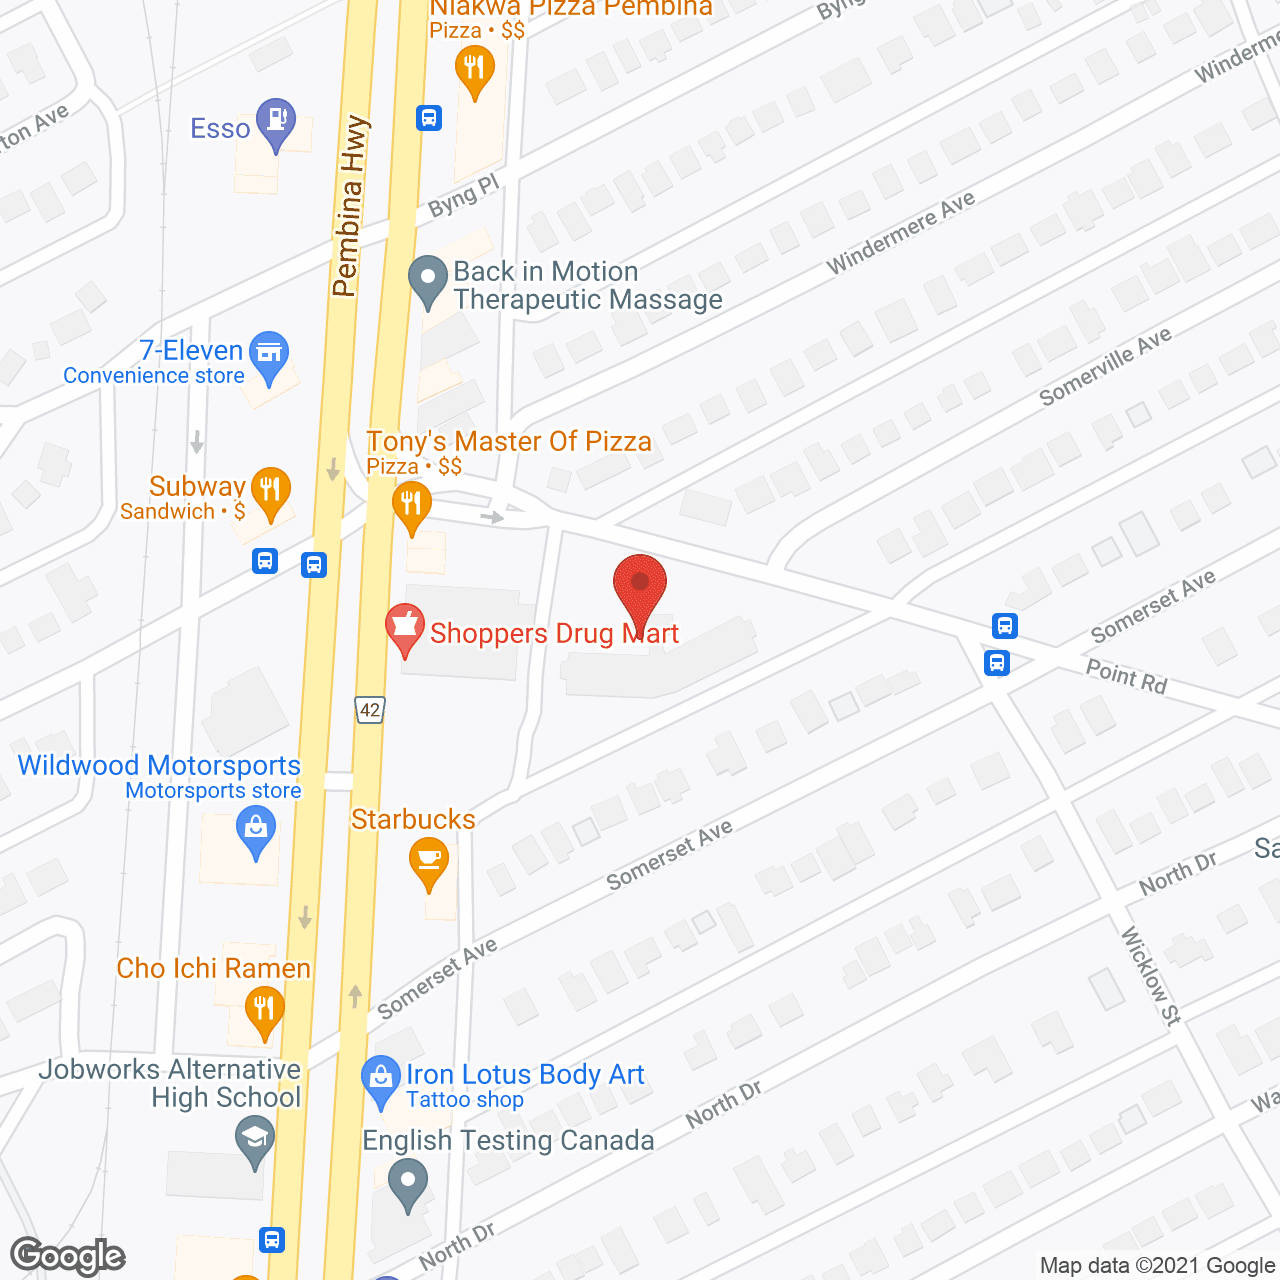 Kiwanis Plaza in google map